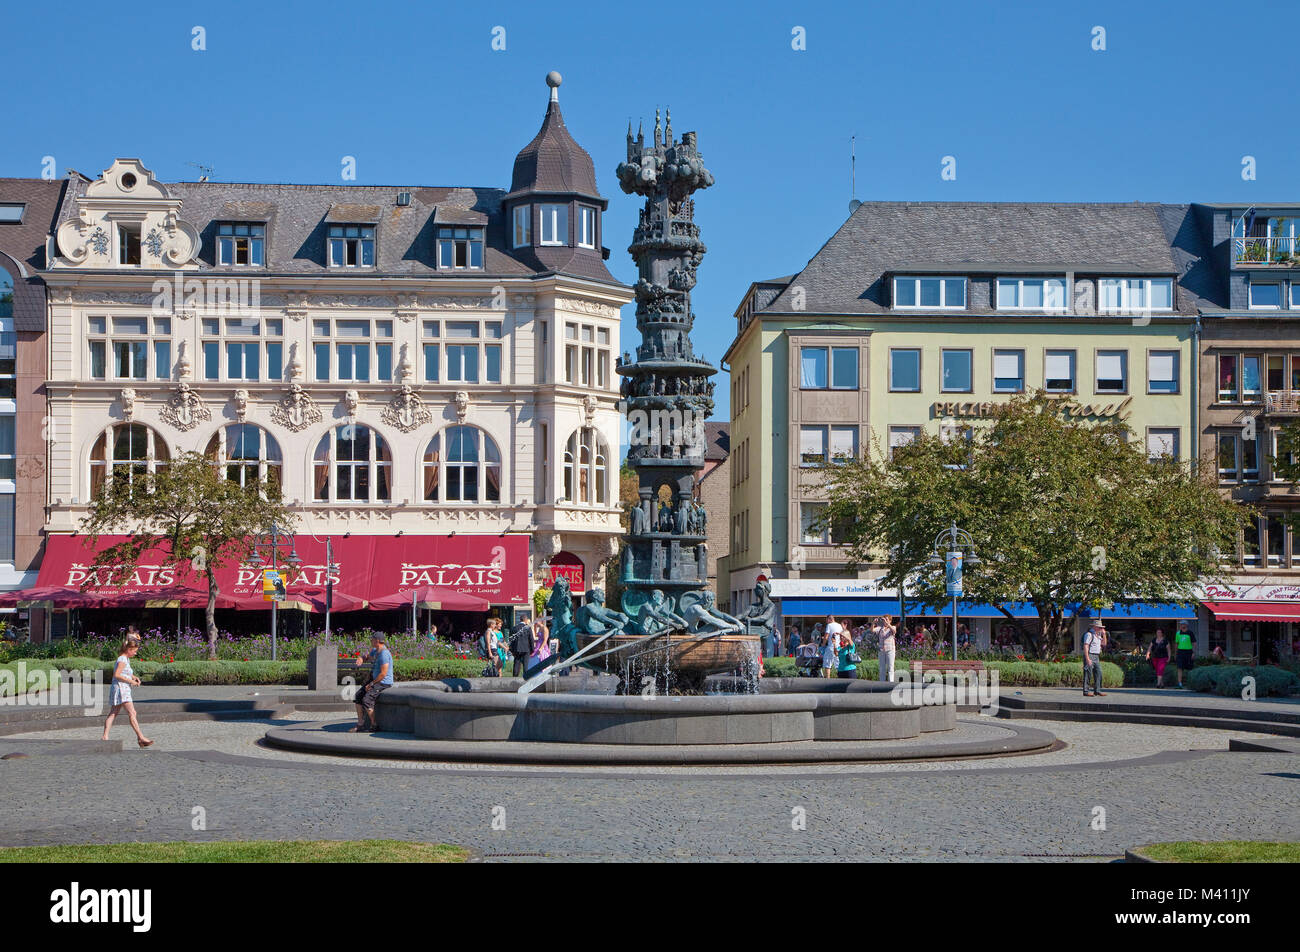 Geschichte Spalte, eine kunstvolle Brunnen an Josef-Goerres - zeigt die Geschichte der Stadt, Altstadt von Koblenz, Rheinland-Pfalz, Deutschland, Europa Stockfoto